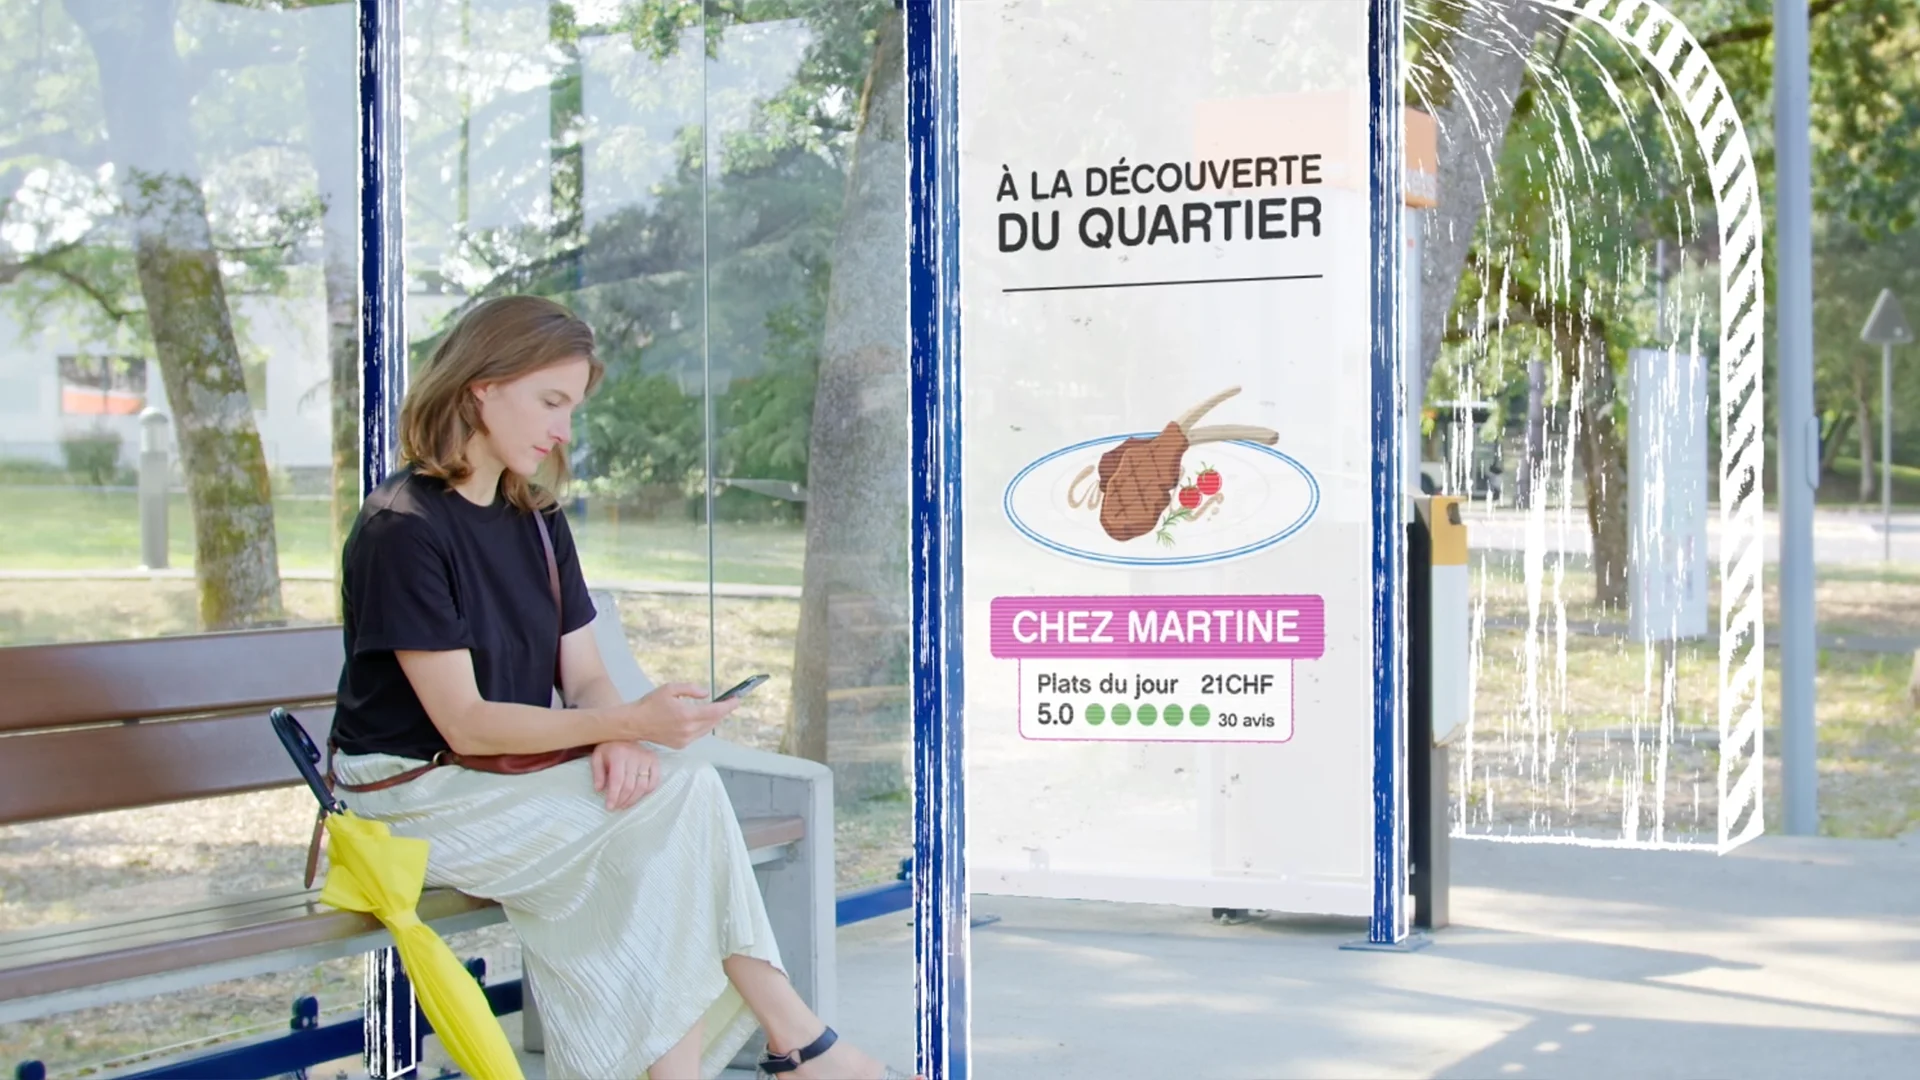 Cornland Studio - Une femme assise sur un banc attend son bus en regardant les horaires sur son téléphone portable